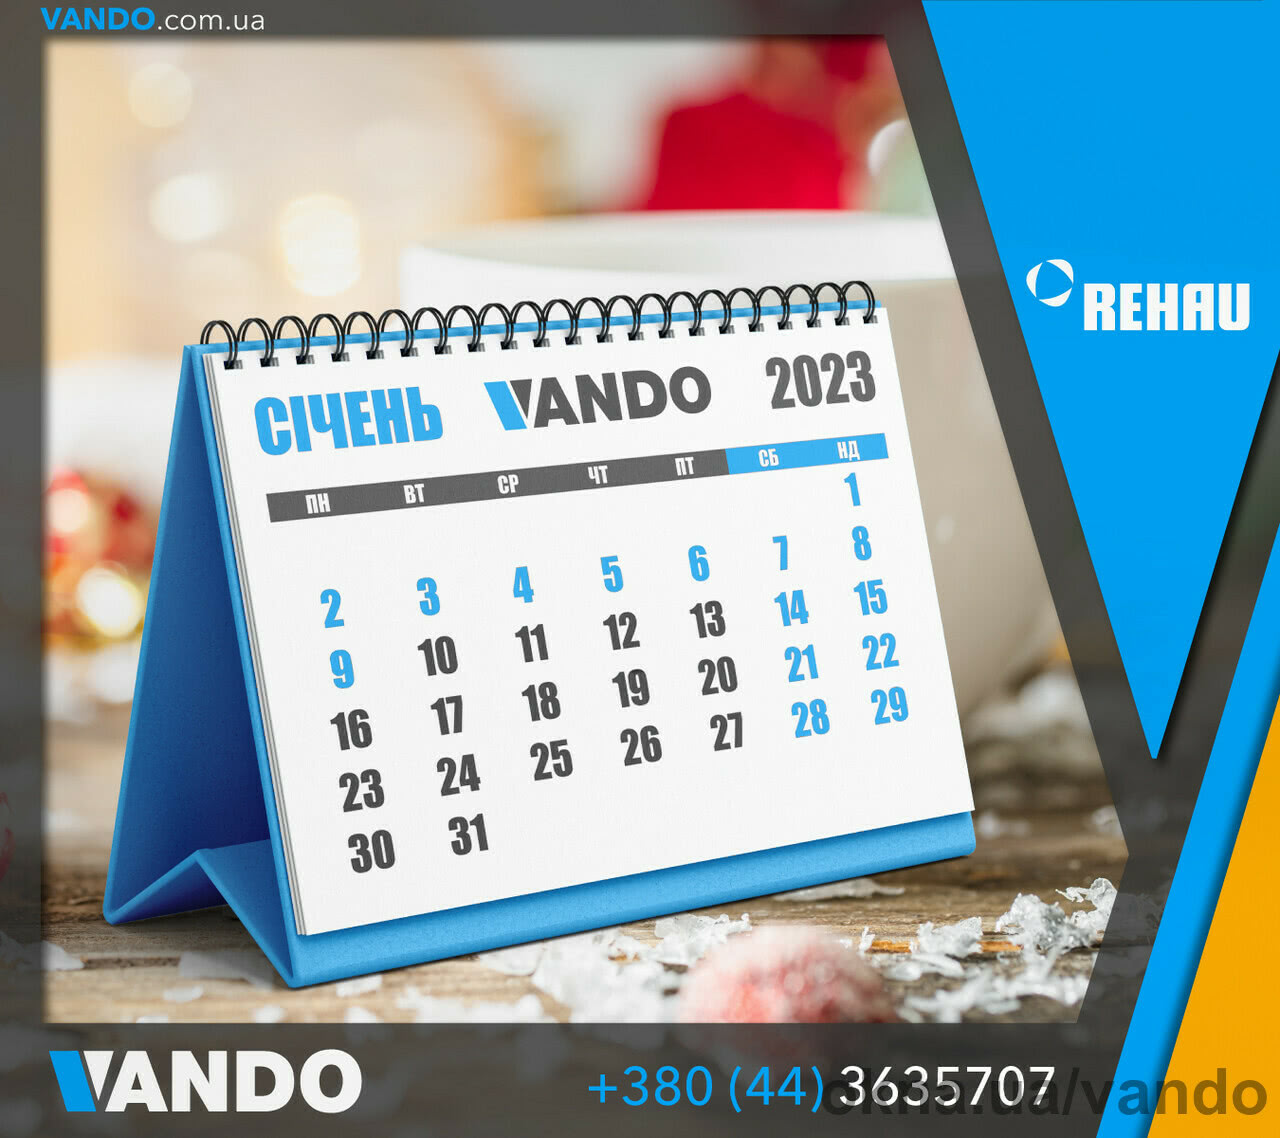 VANDO на новорічні свята працює з 4 січня